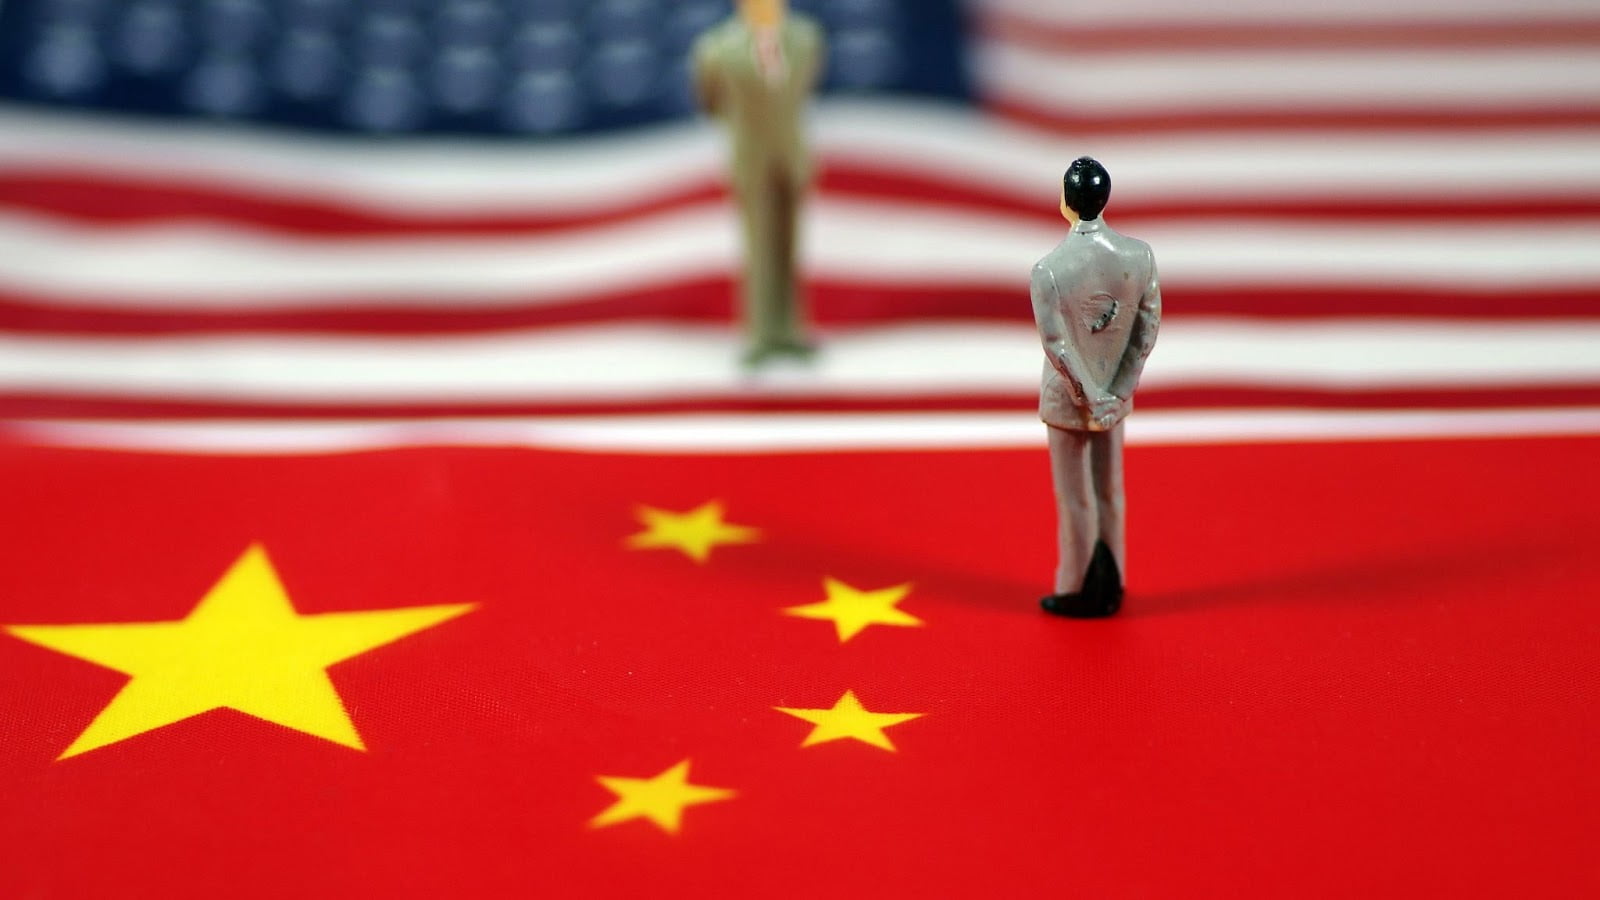 Χαμένοι οι καταναλωτές με τον πόλεμο ΗΠΑ-Κίνας σύμφωνα με το ΔΝΤ